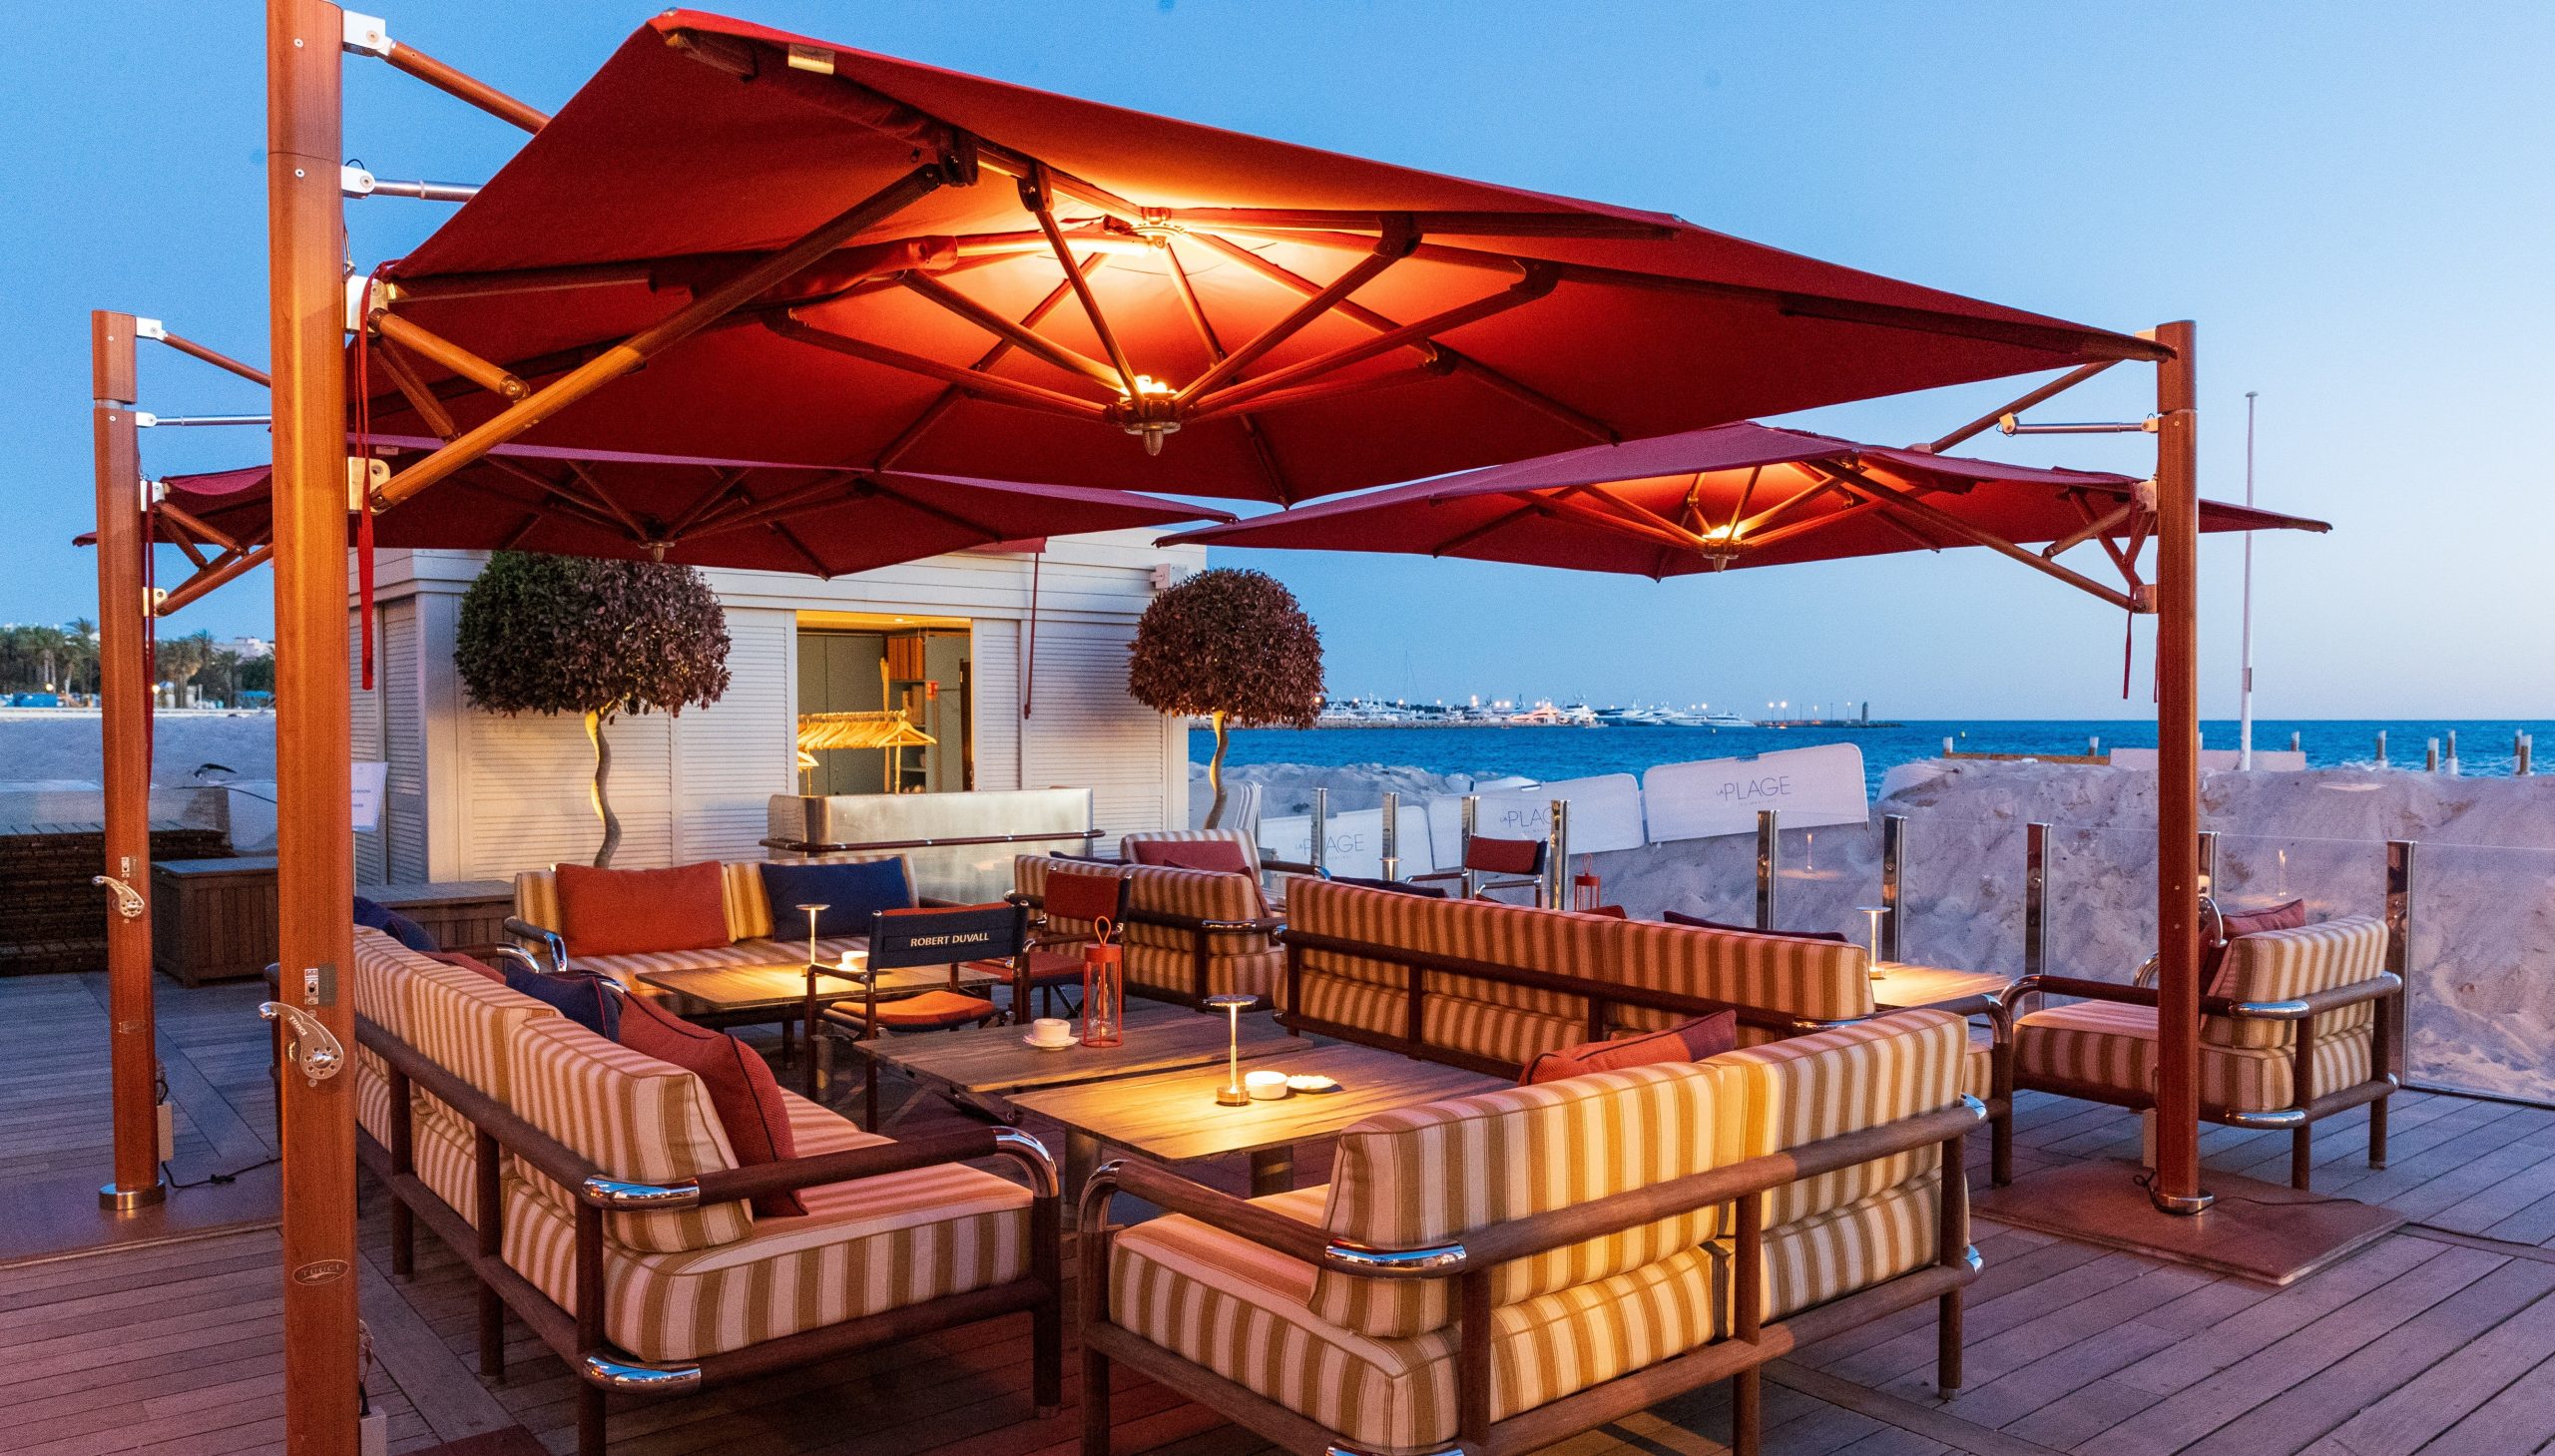 Select Venue - photo terrasse bar de plage coin lounge